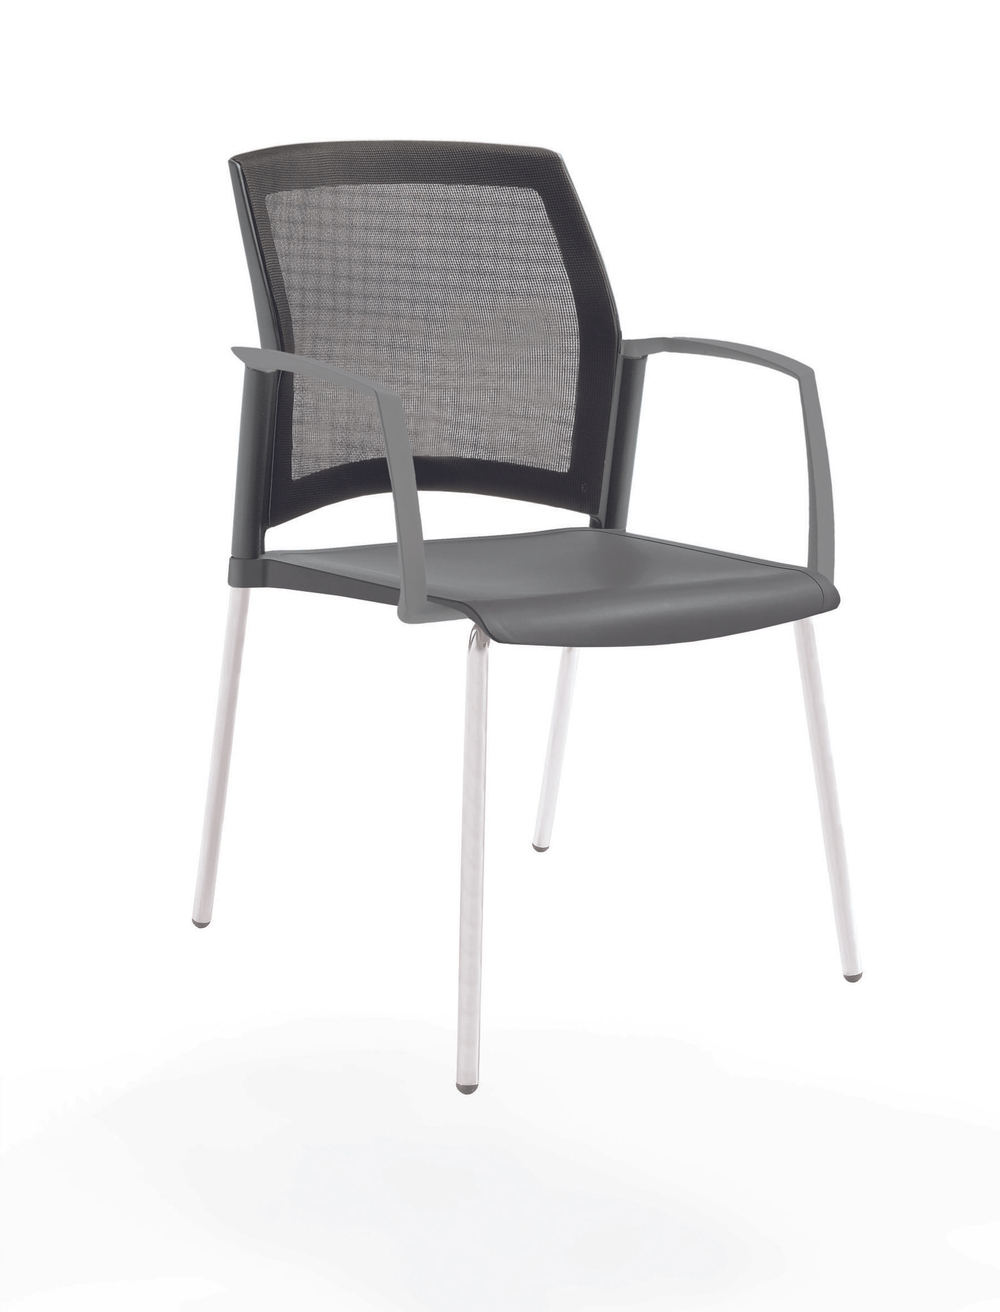 стул Rewind на 4 ногах, каркас белый, пластик серый, спинка-сетка, с закрытыми подлокотниками